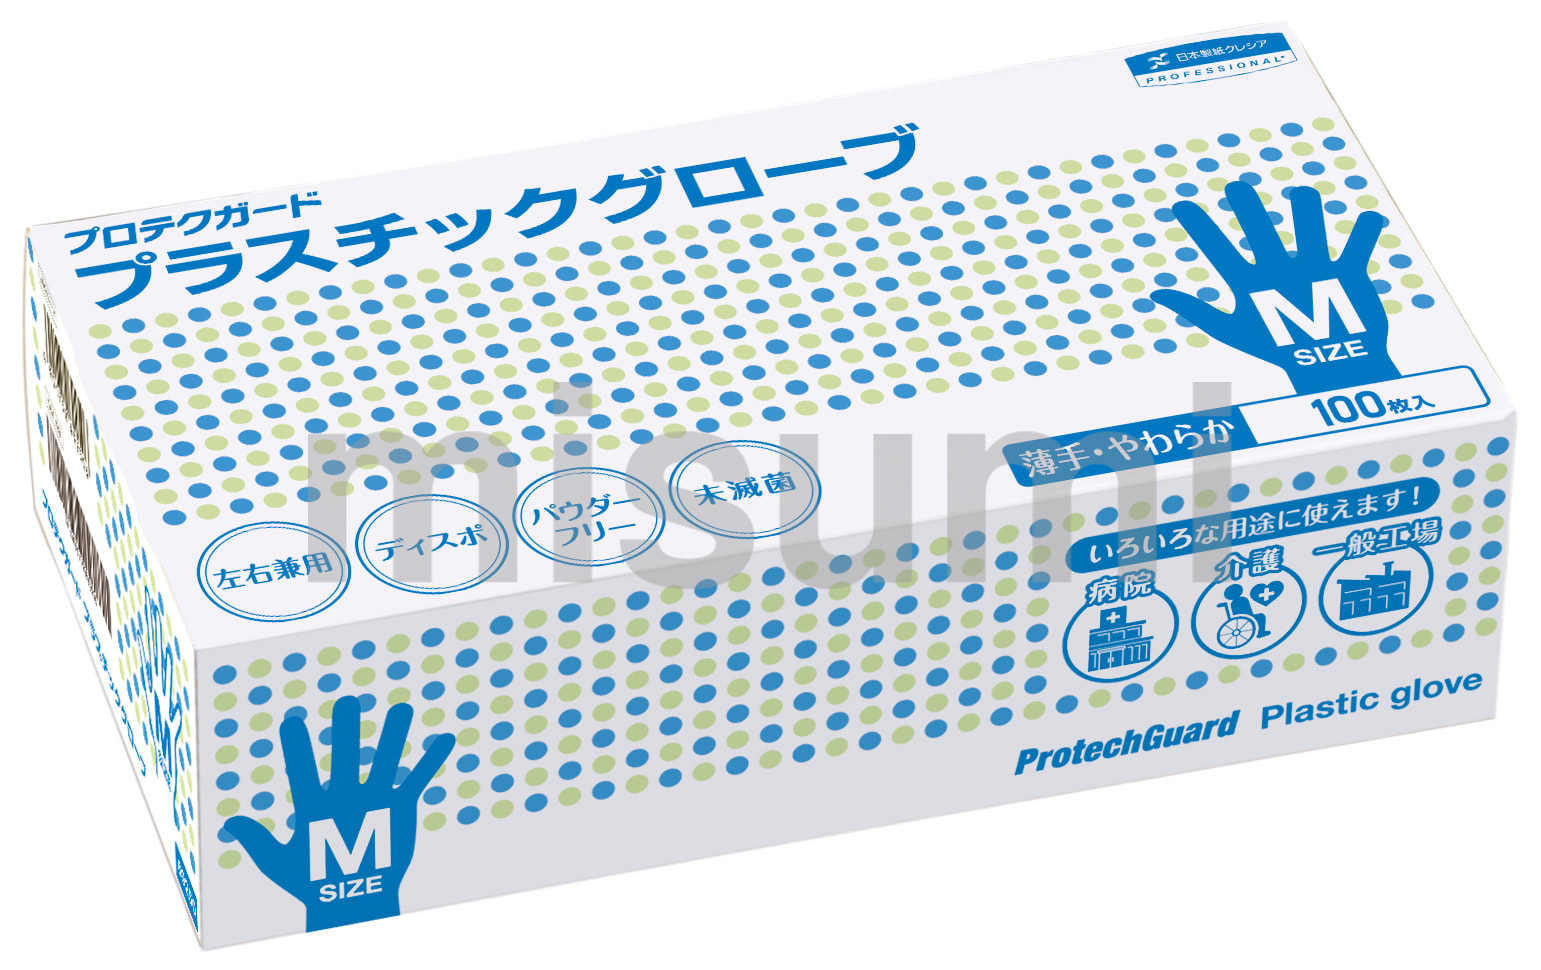 プロテクガード プラスチックグローブ | 日本製紙クレシア | MISUMI